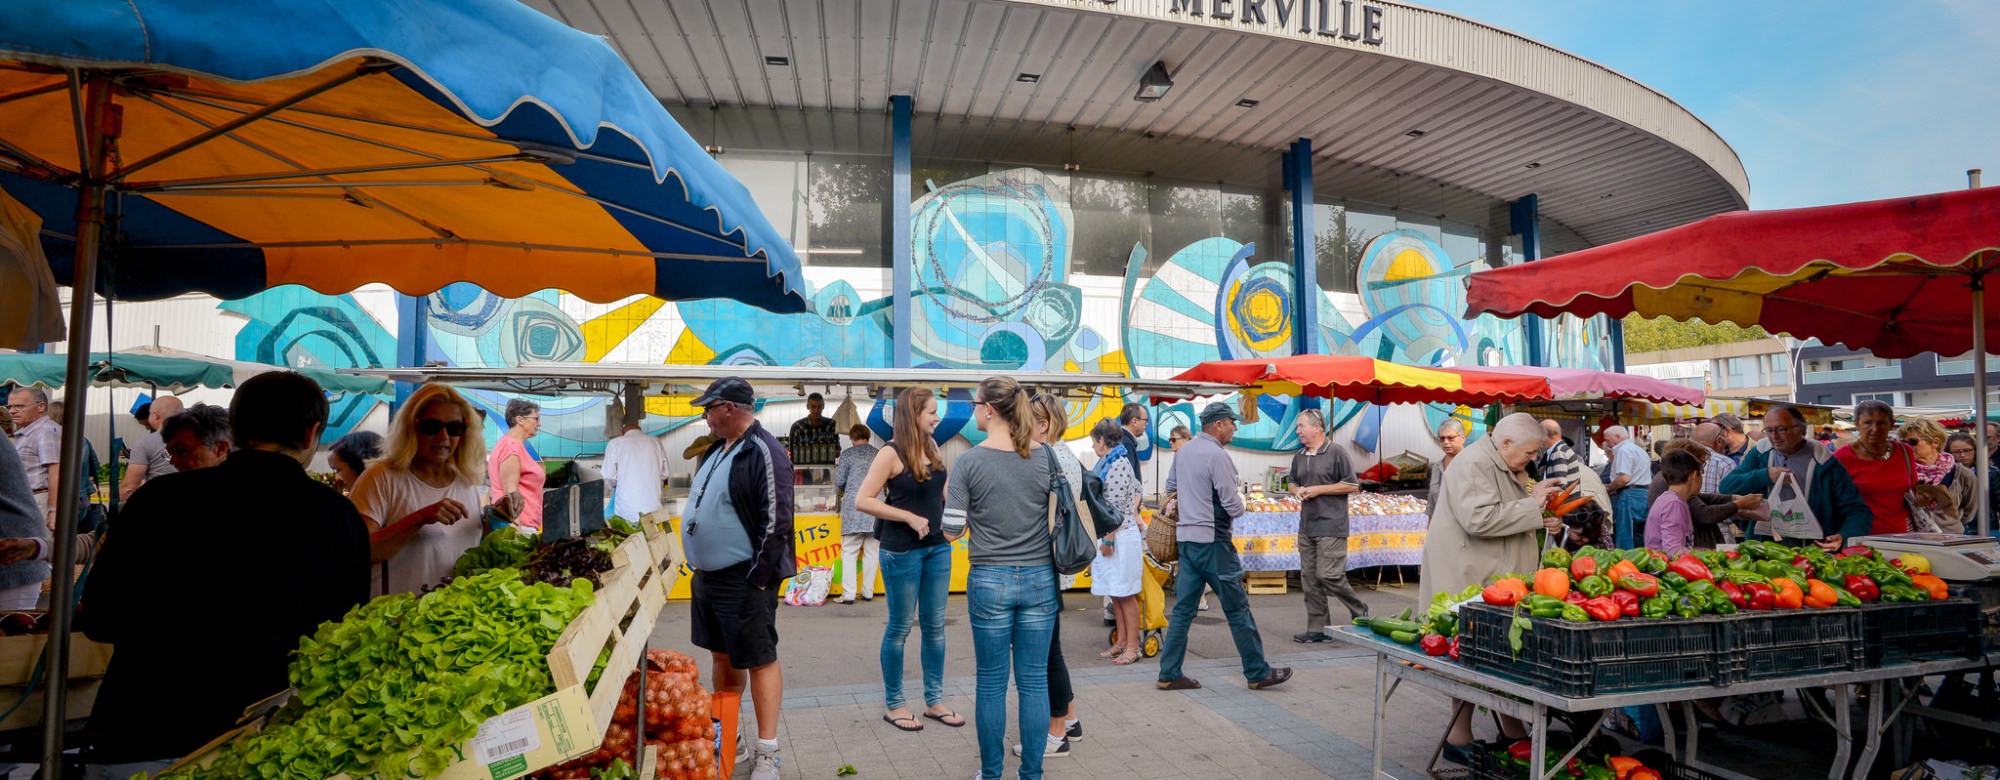 Le marché de Merville à Lorient, chaque mercredi et samedi matin.